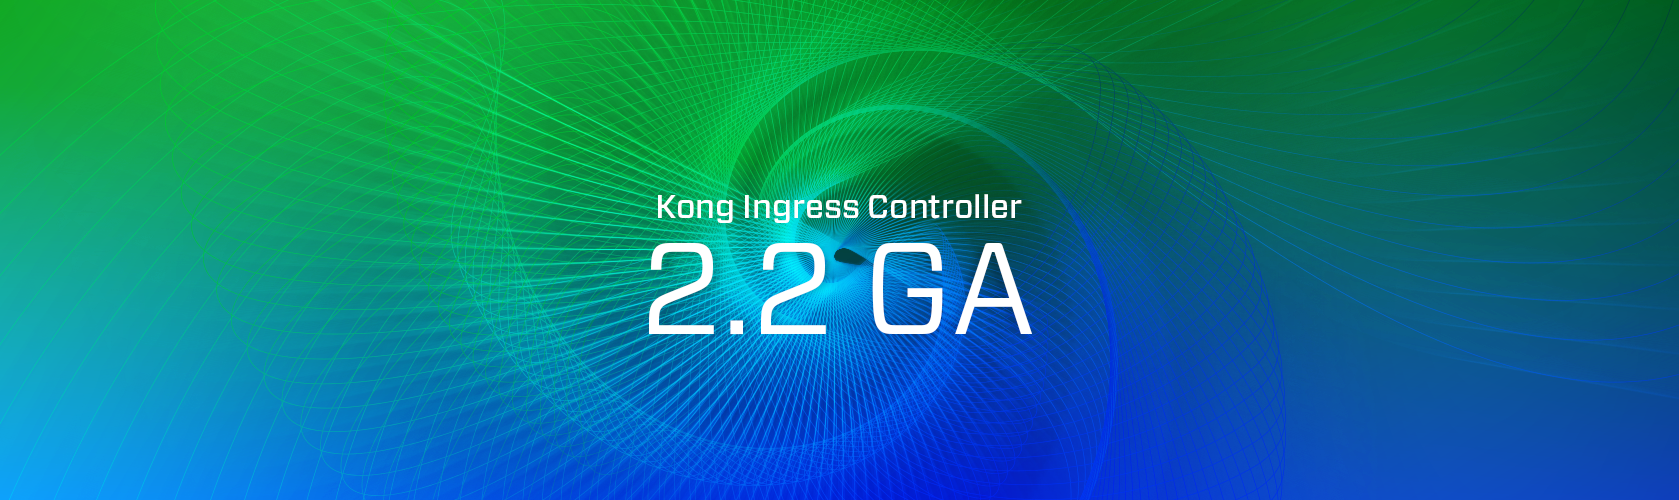 Kong Ingress Controller 2.2 GA Release